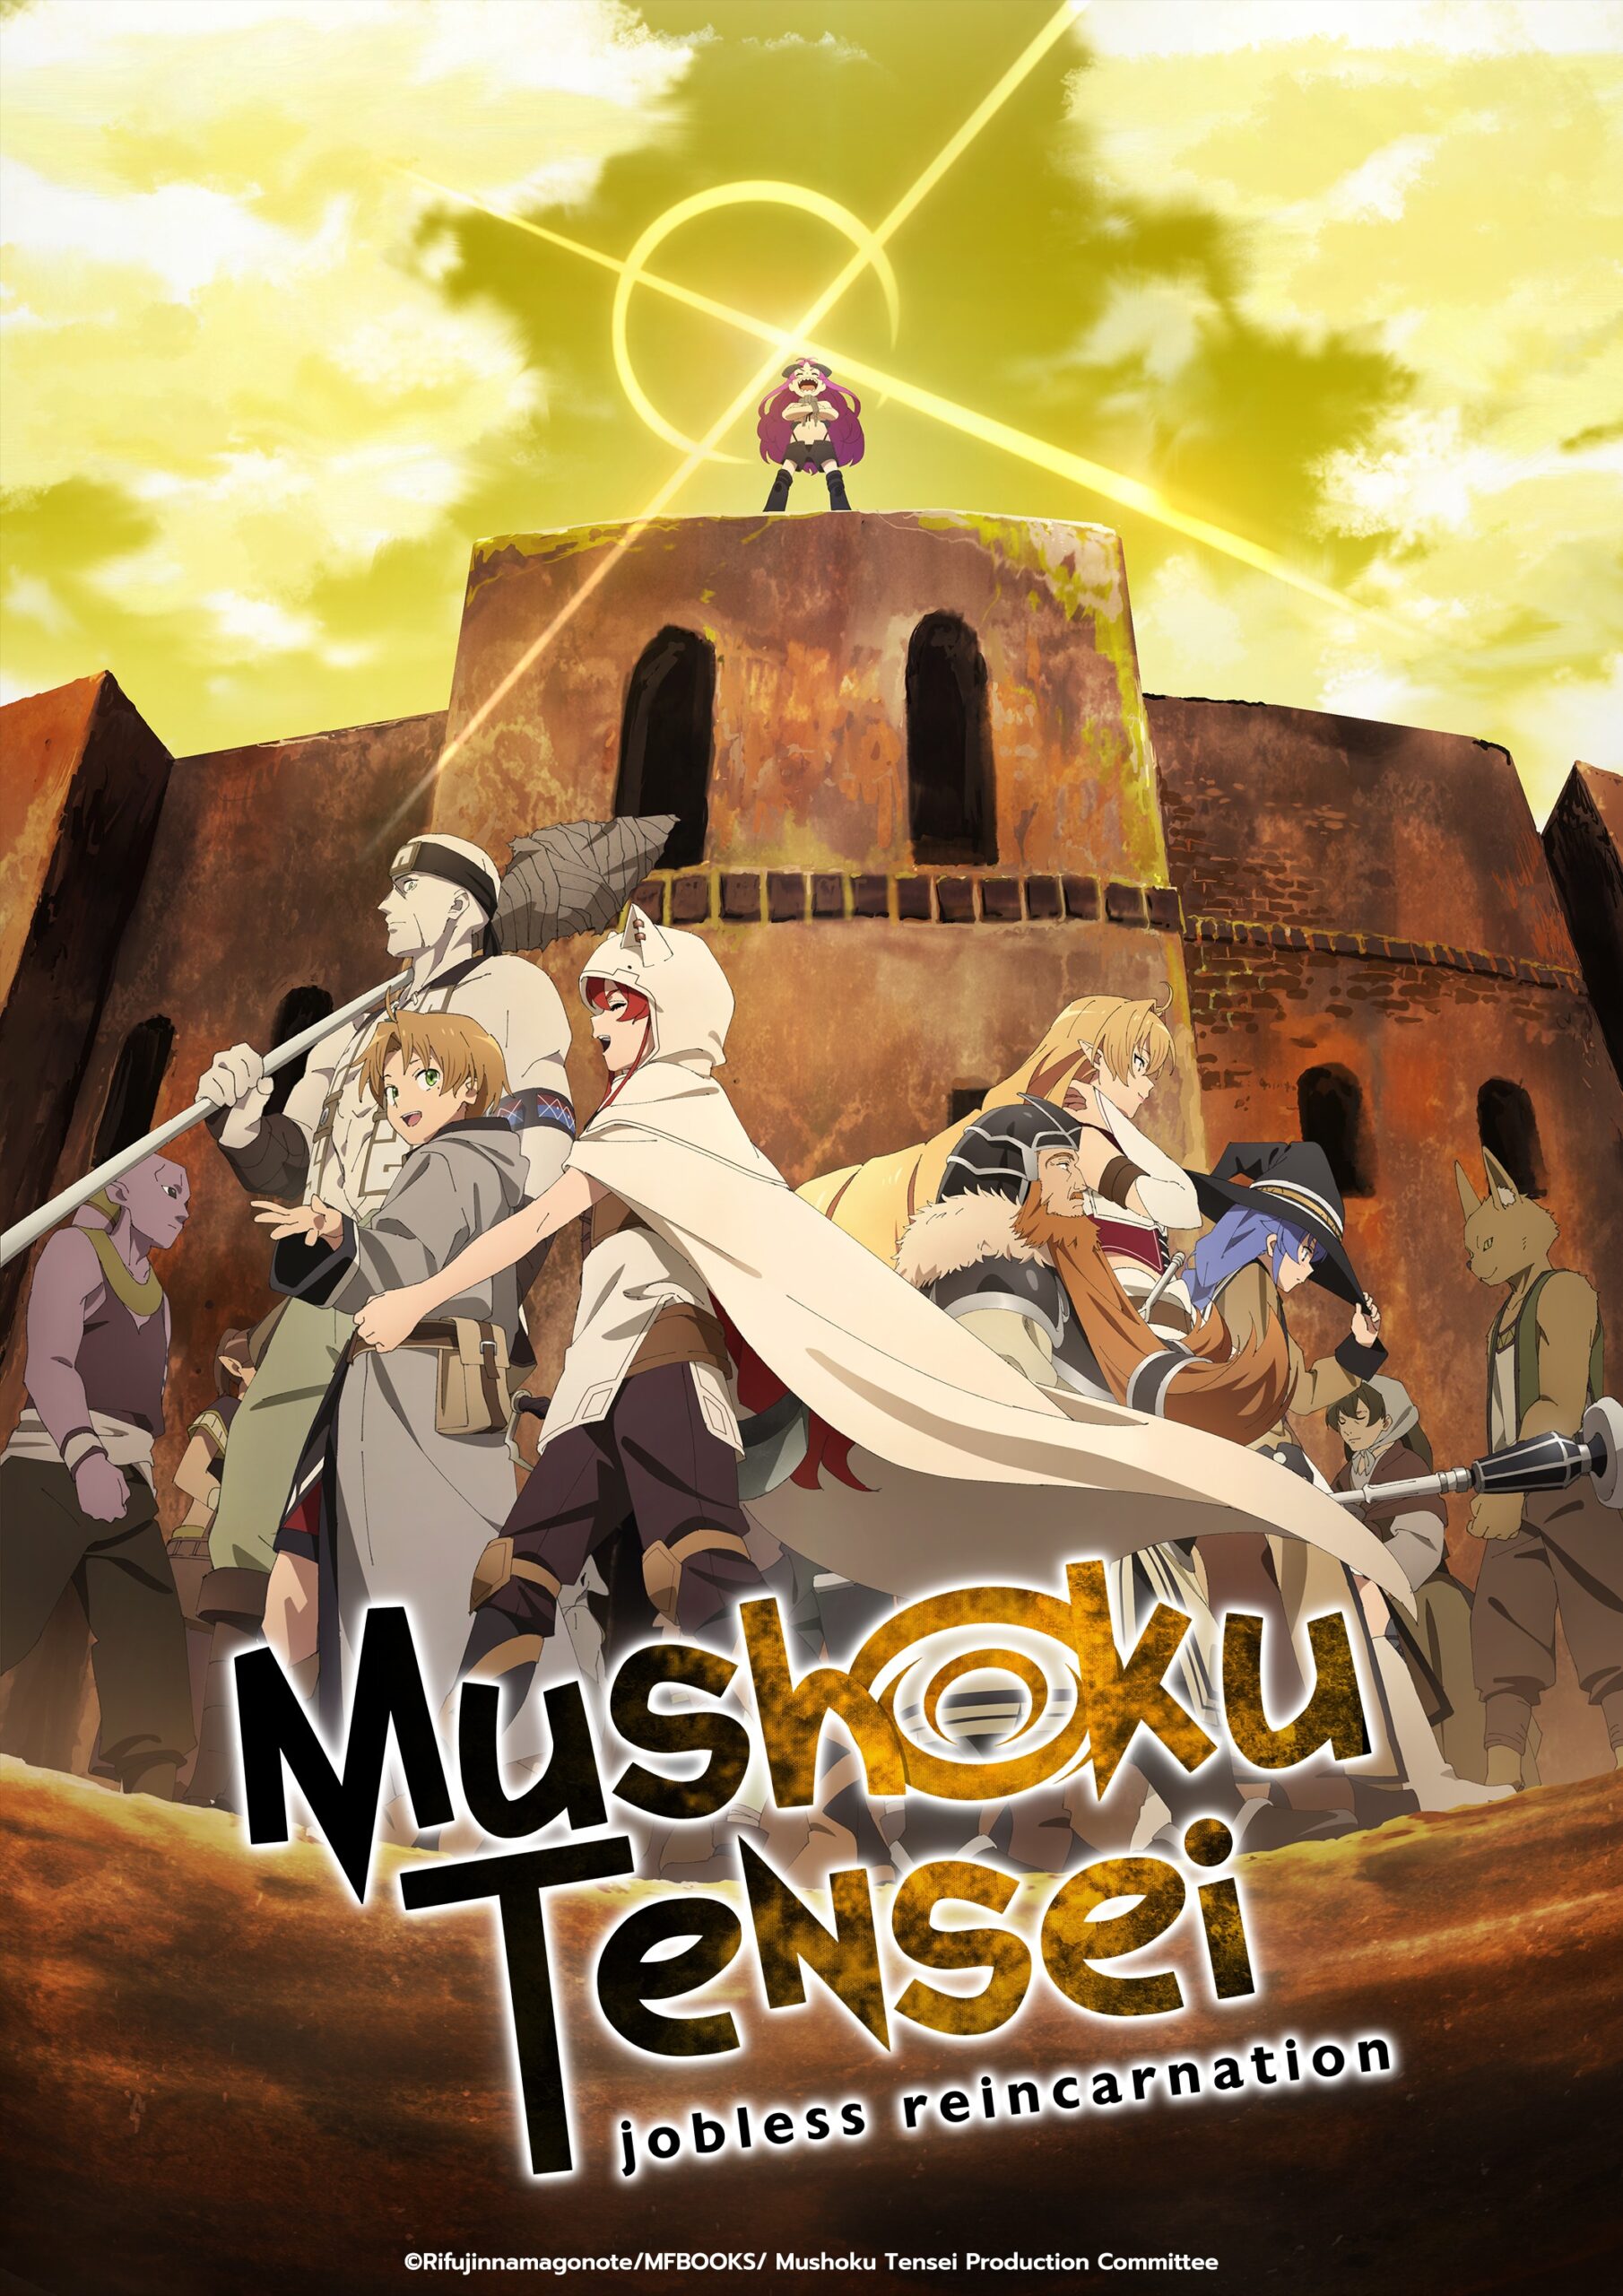 El anime Kyuuketsuki Sugu Shinu tendrá 12 episodios — Kudasai